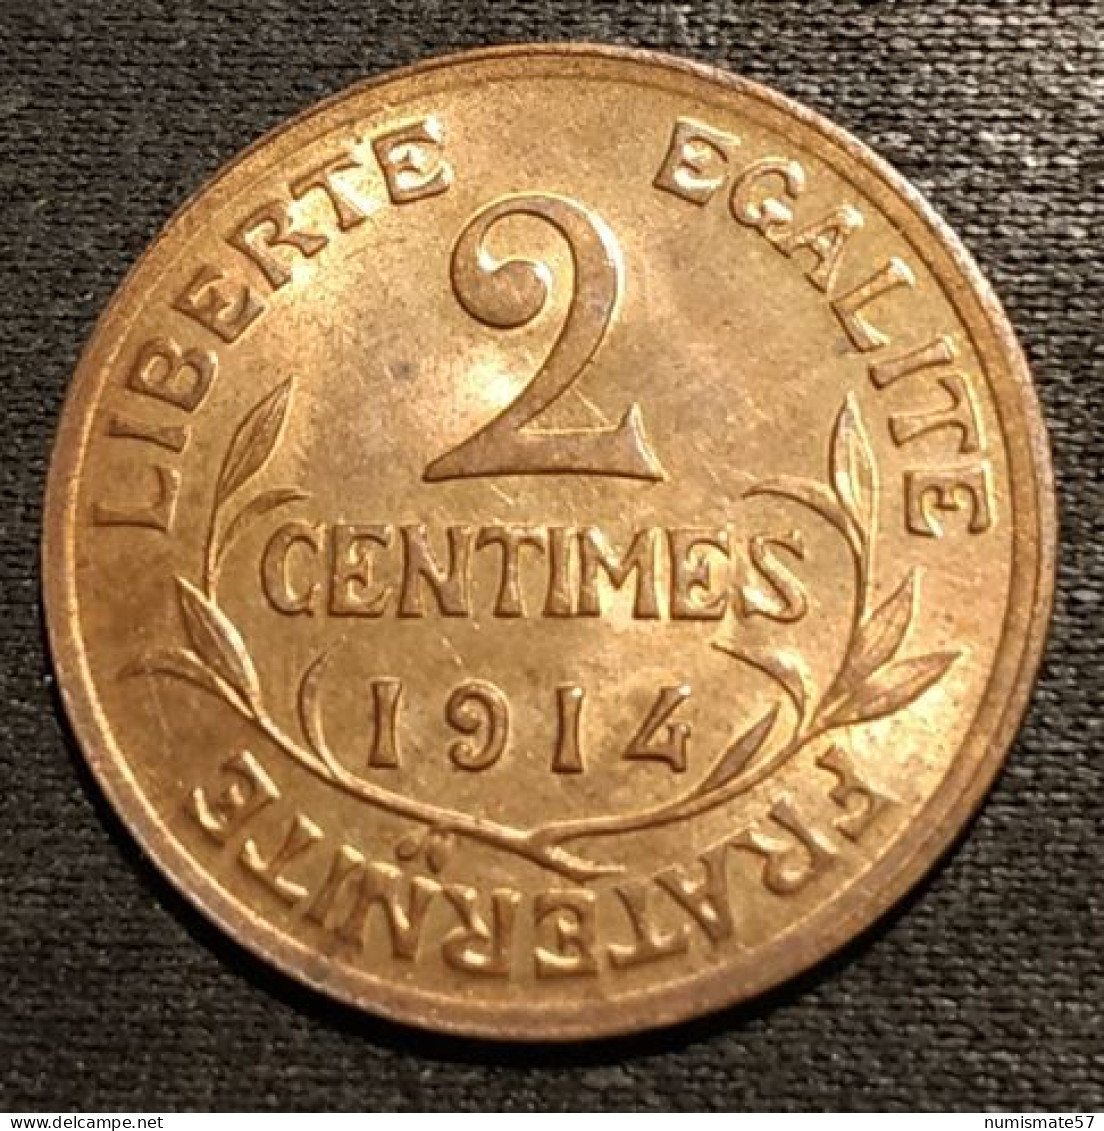 FRANCE - 2 CENTIMES 1914 - Daniel-Dupuis - Gad 107 - KM 841 - 2 Centimes